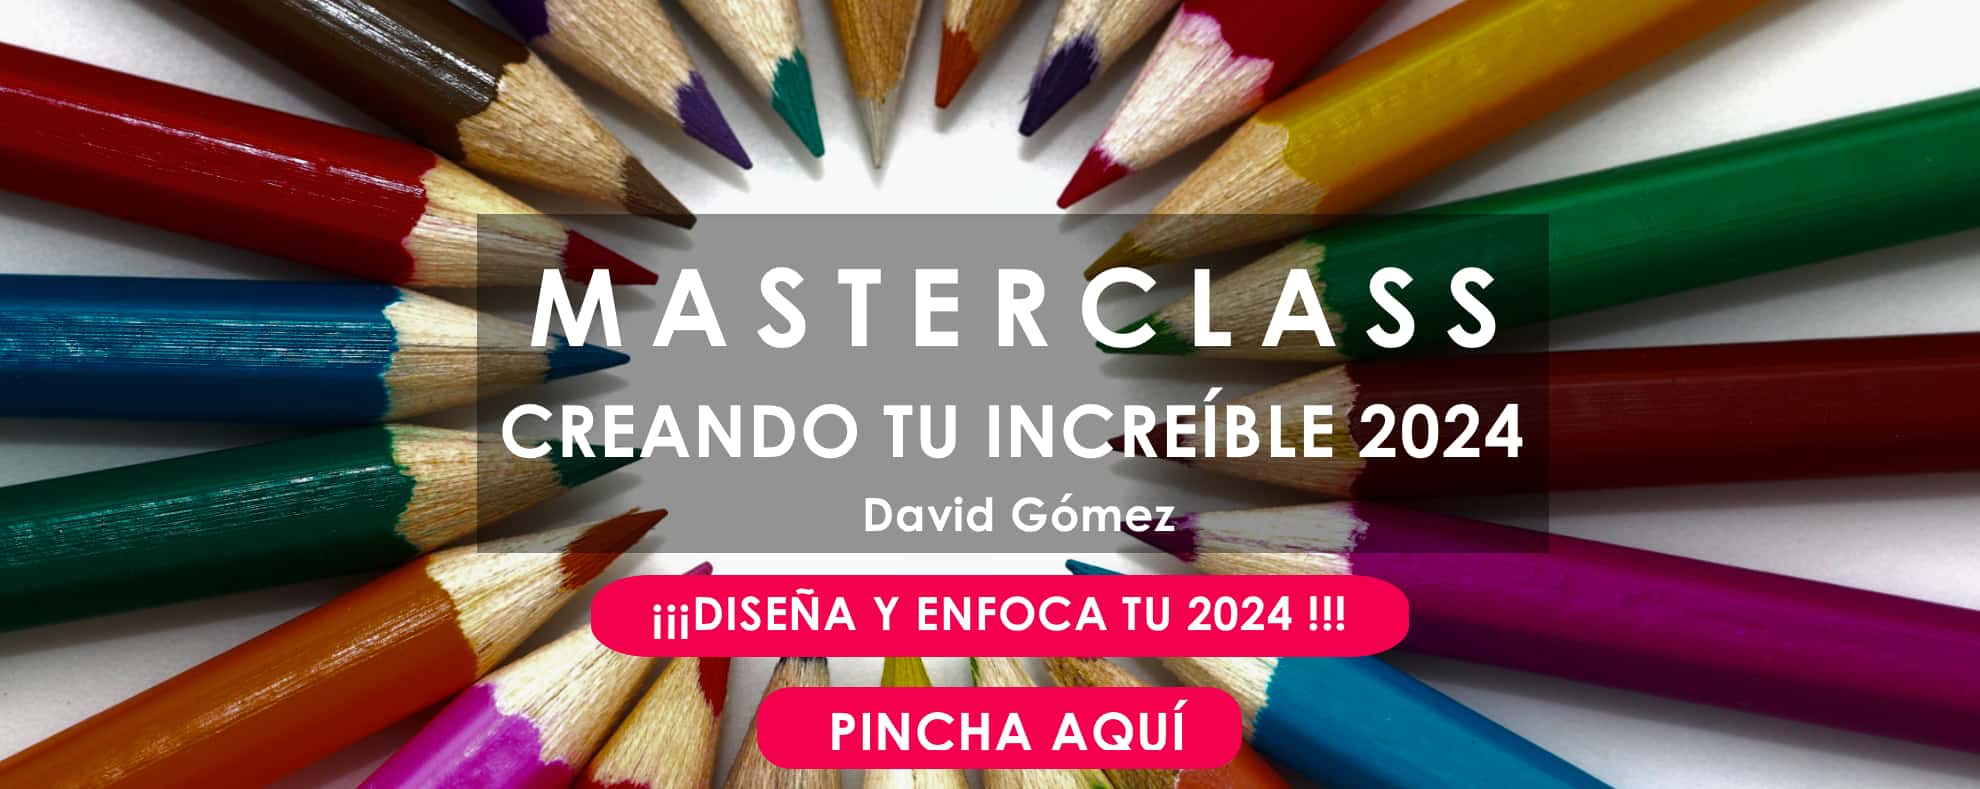 MASTERCLASS Creando tu increible 2024 David Gómez